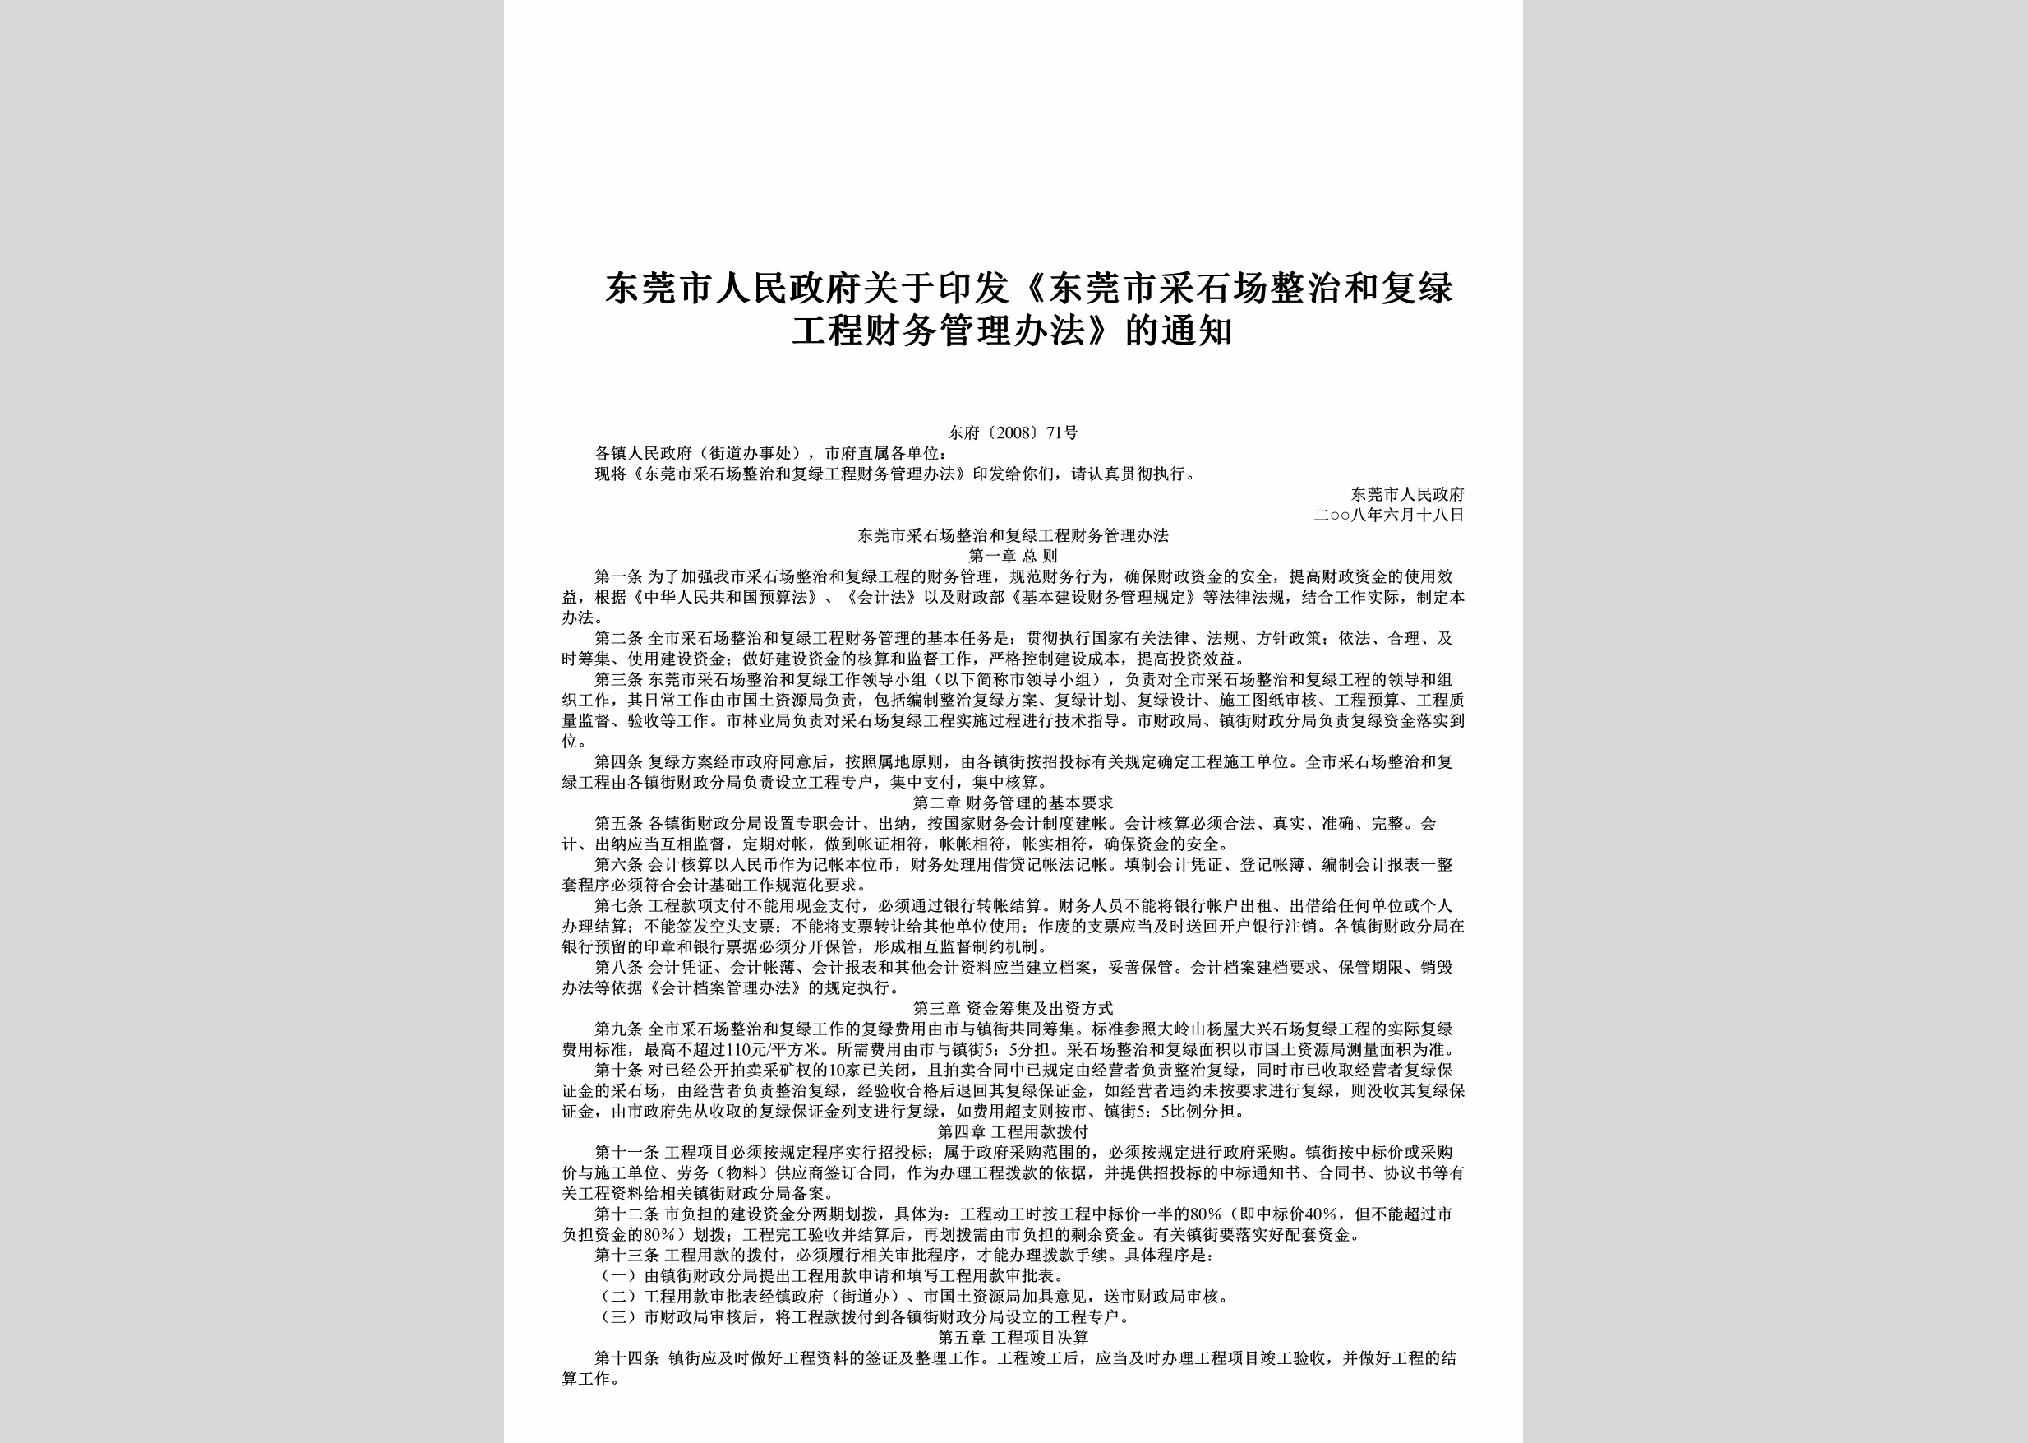 东府[2008]71号：关于印发《东莞市采石场整治和复绿工程财务管理办法》的通知